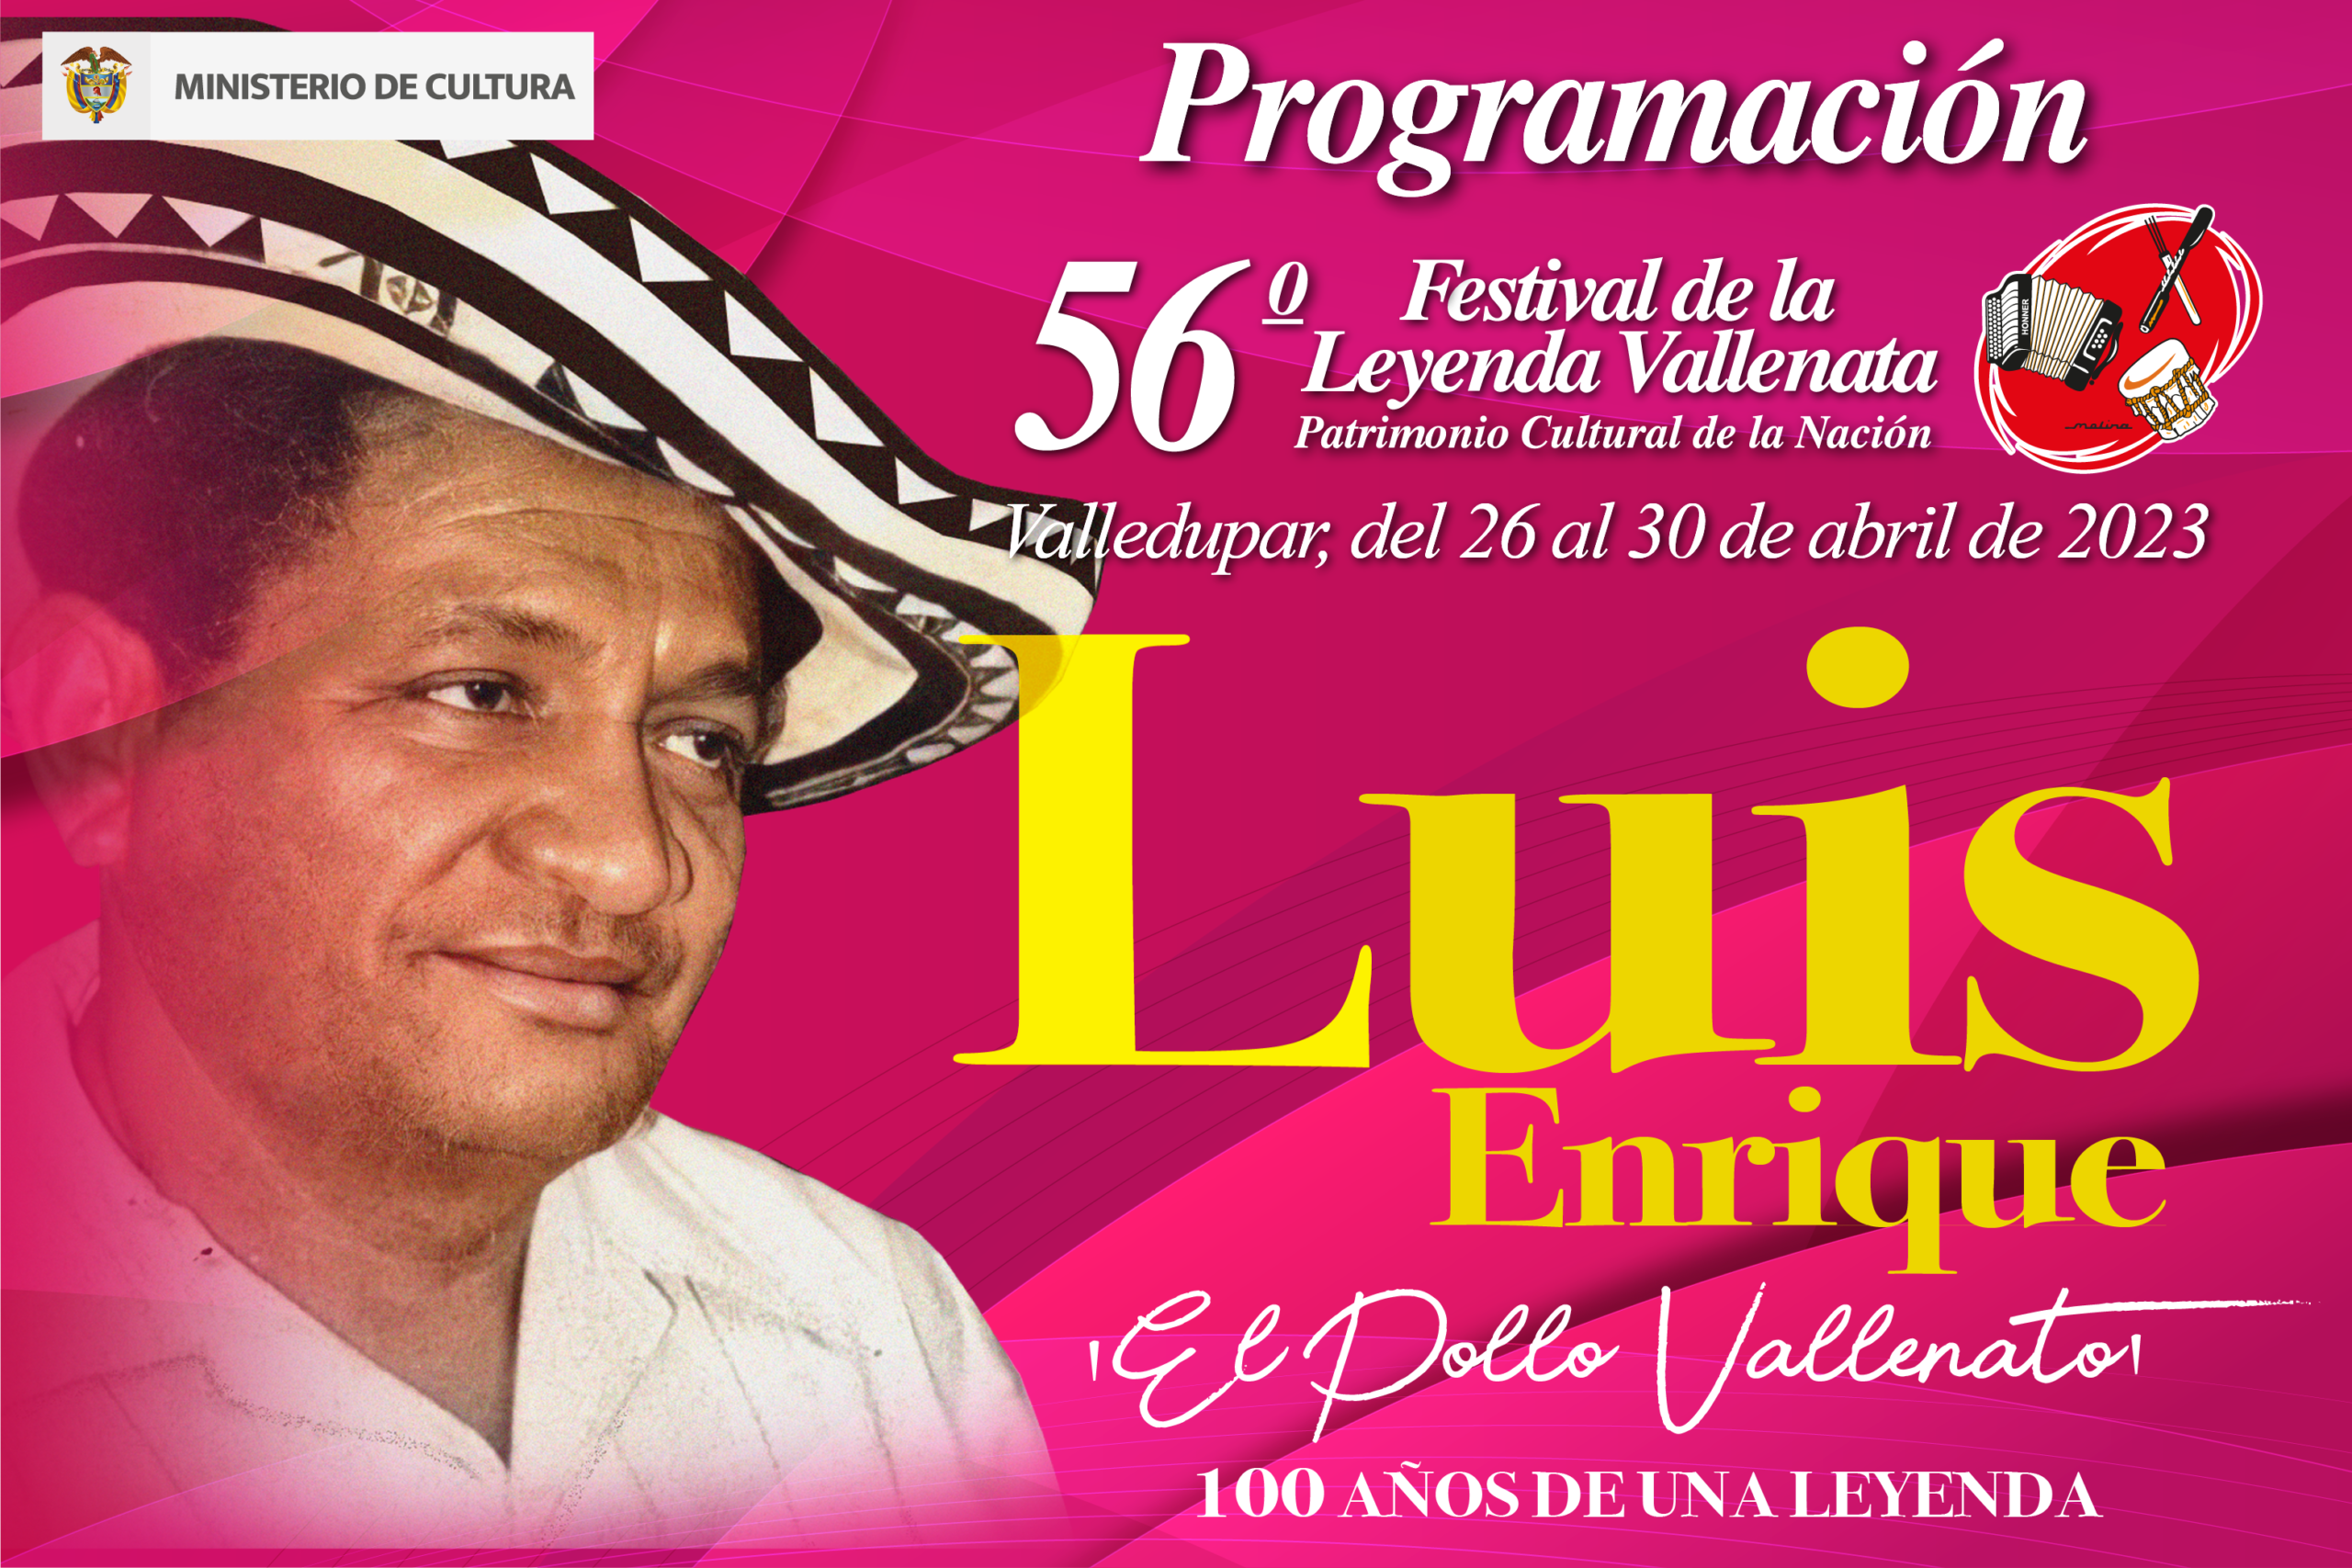 Programación del 56° Festival de la Leyenda Vallenata en homenaje a Luis Enrique Martínez